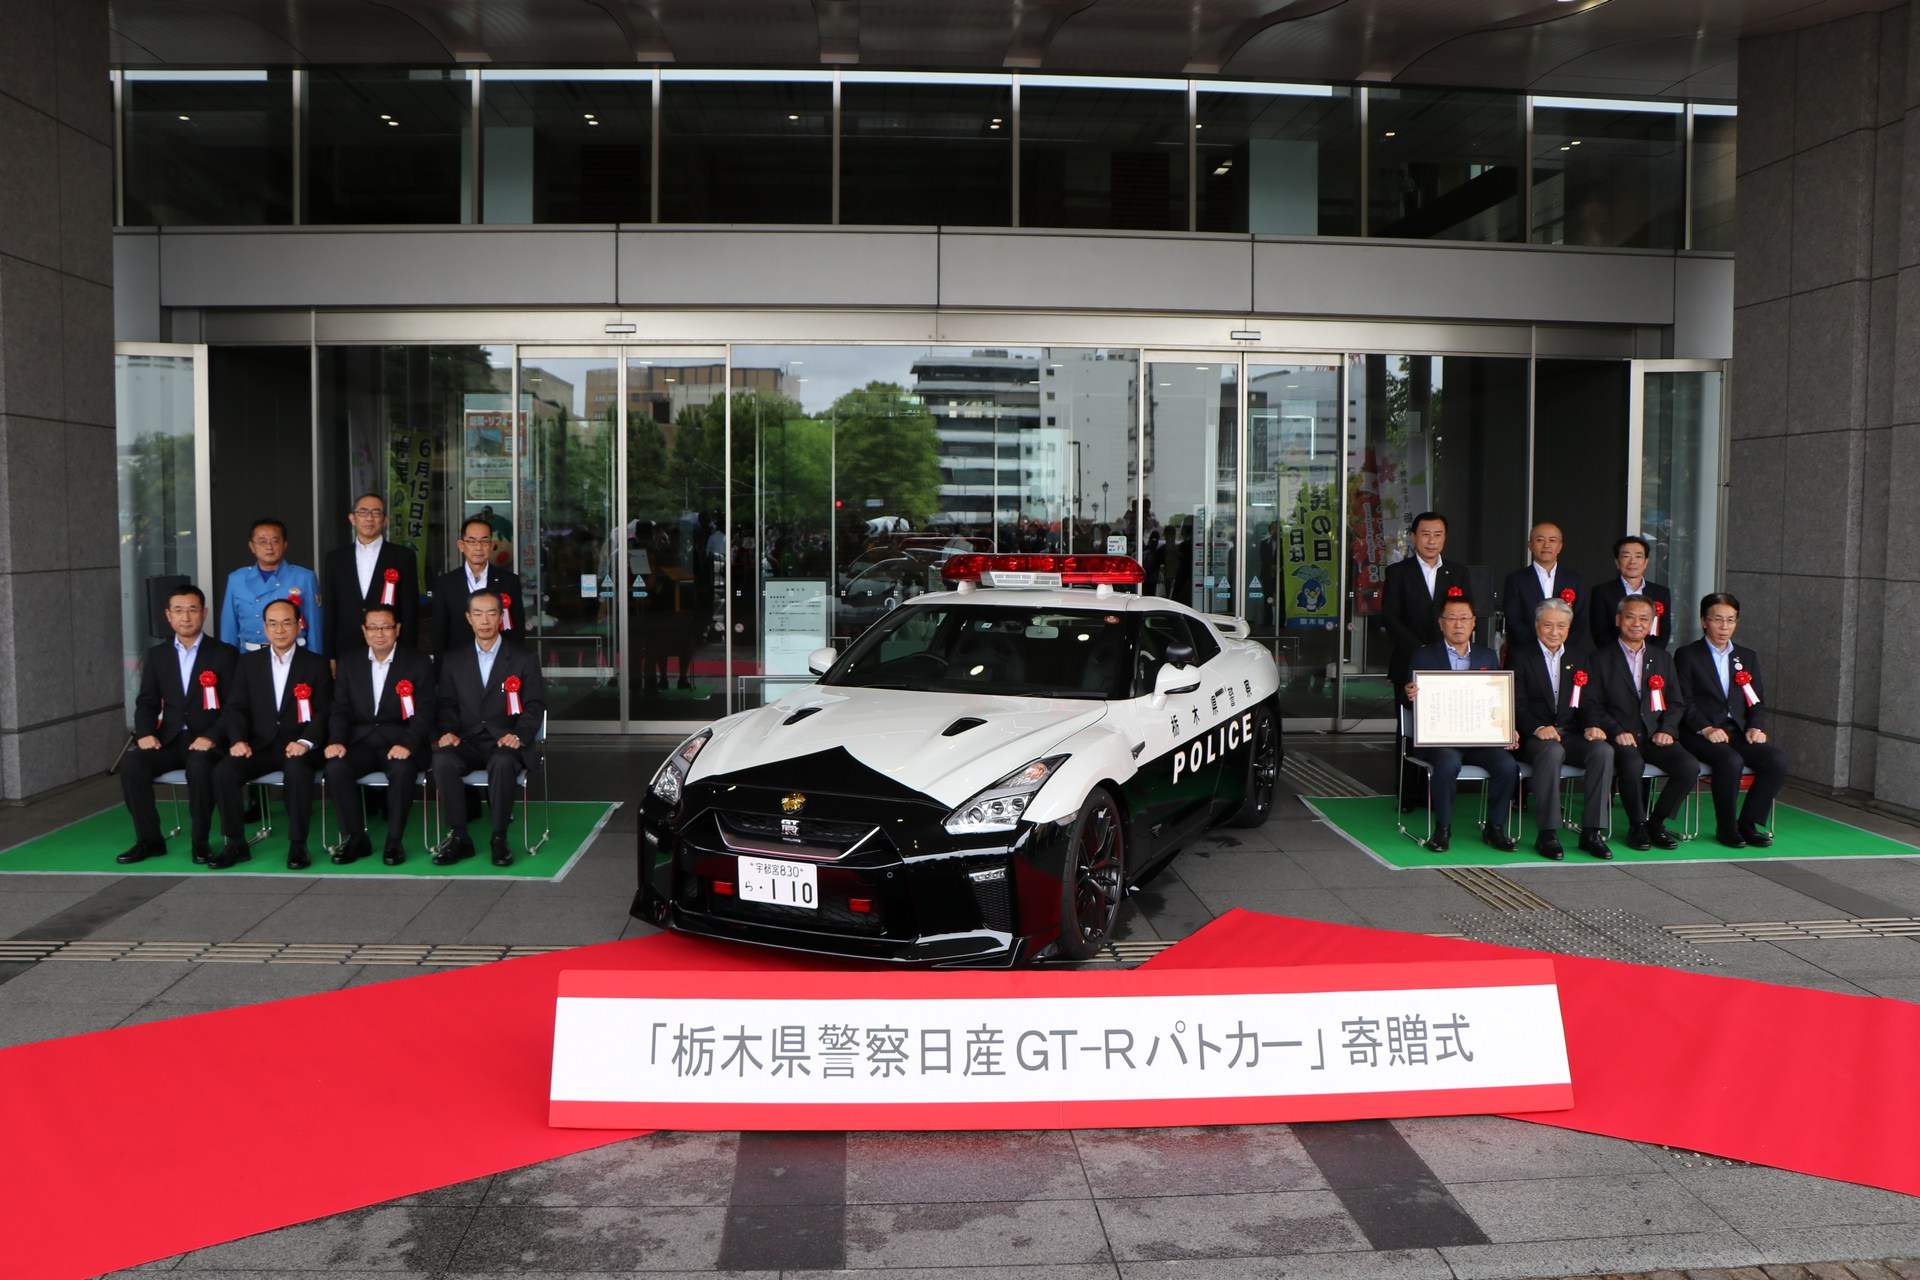 "بالصور" نيسان GT-R تدخل الخدمة رسميا بأسطول الشرطة اليابانية 6